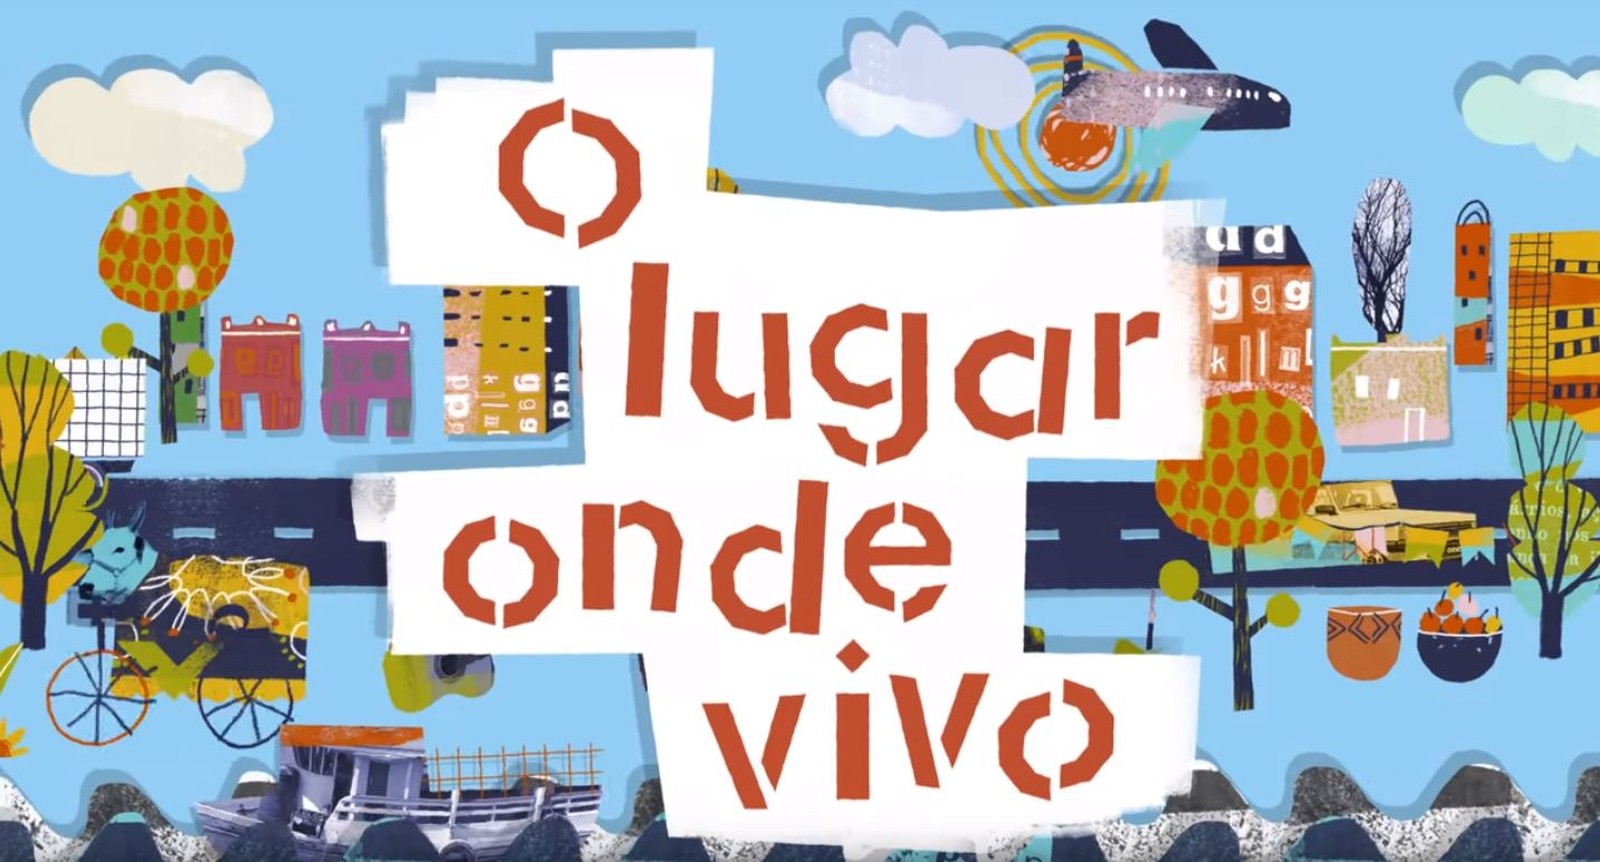 olimpiada lingua portuguesa 2019